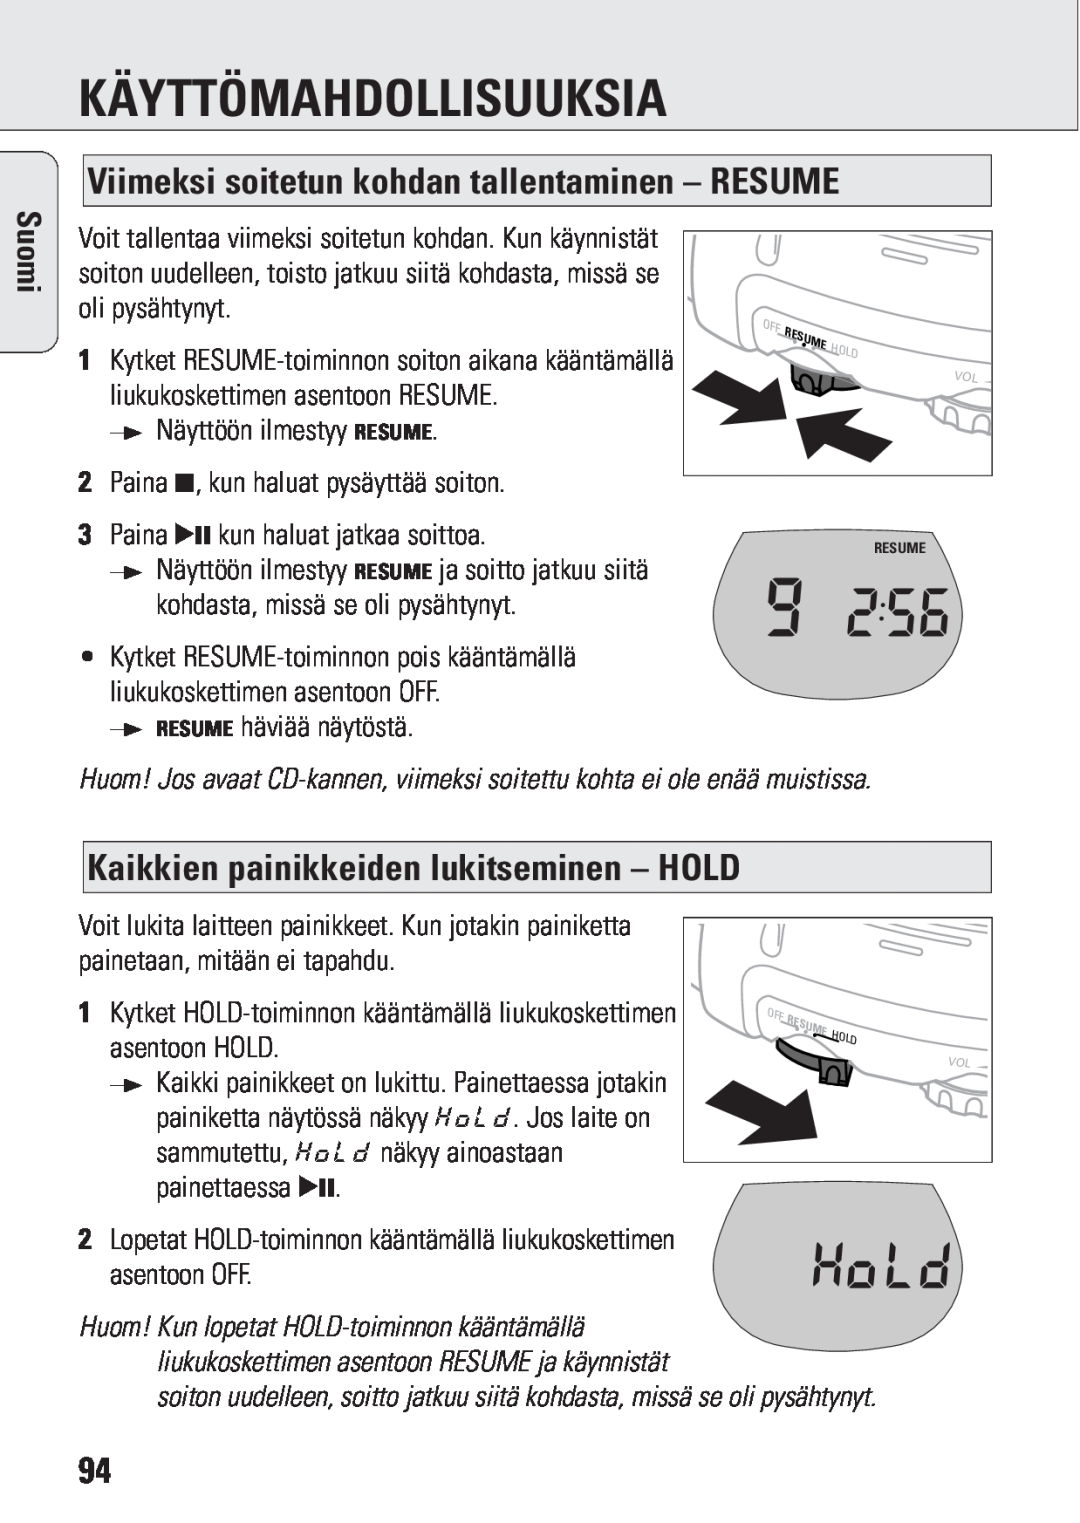 Philips ACT 7583 manual Viimeksi soitetun kohdan tallentaminen – RESUME, Kaikkien painikkeiden lukitseminen – HOLD, Suomi 